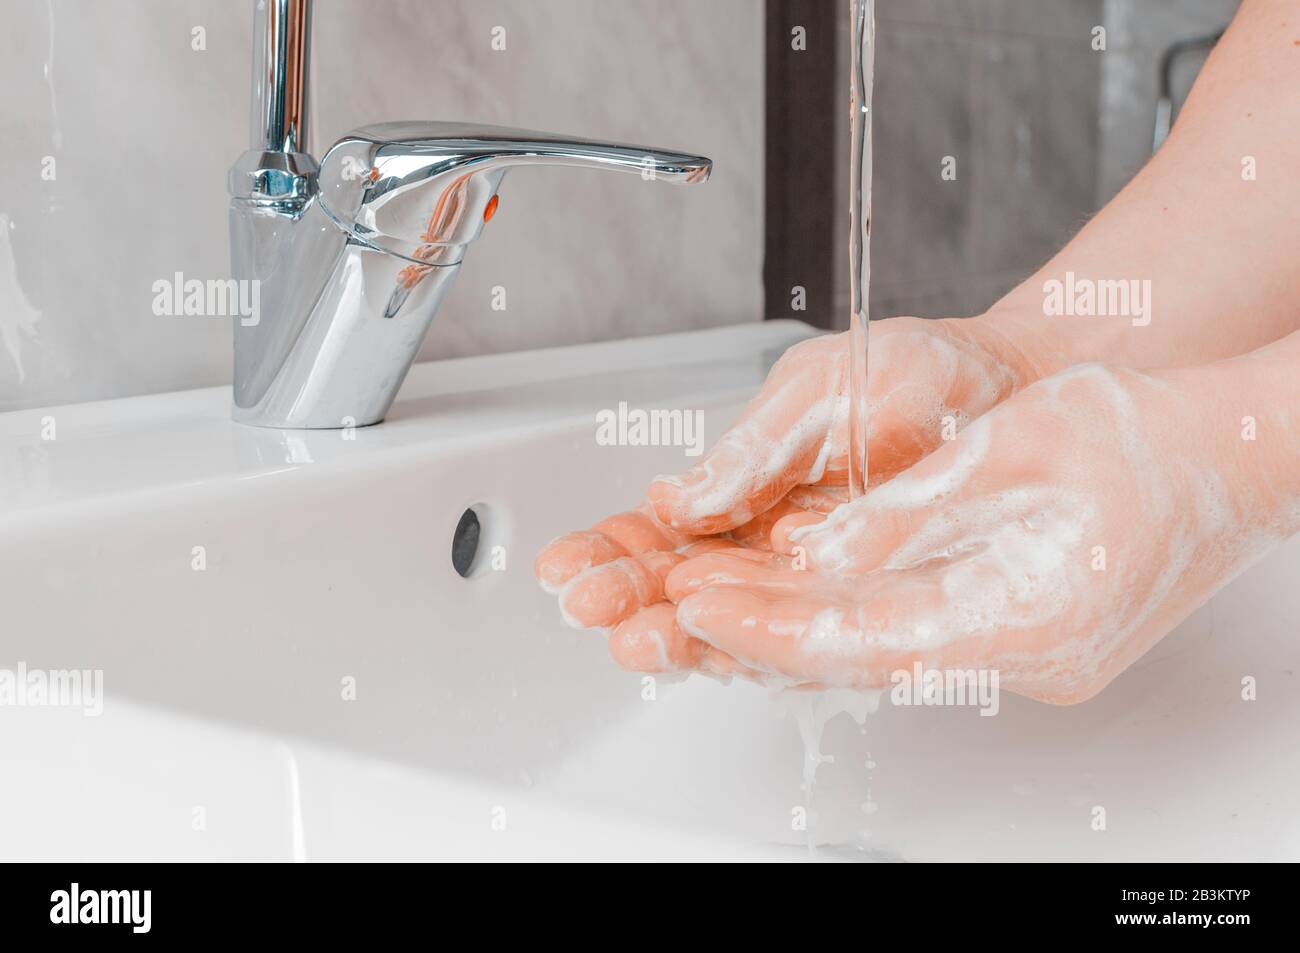 Tecniche efficaci di lavaggio a mano: Sciacquare la mano con acqua. Il lavaggio delle mani è molto importante per evitare il rischio di contagio da coronavirus e batteri. Foto Stock